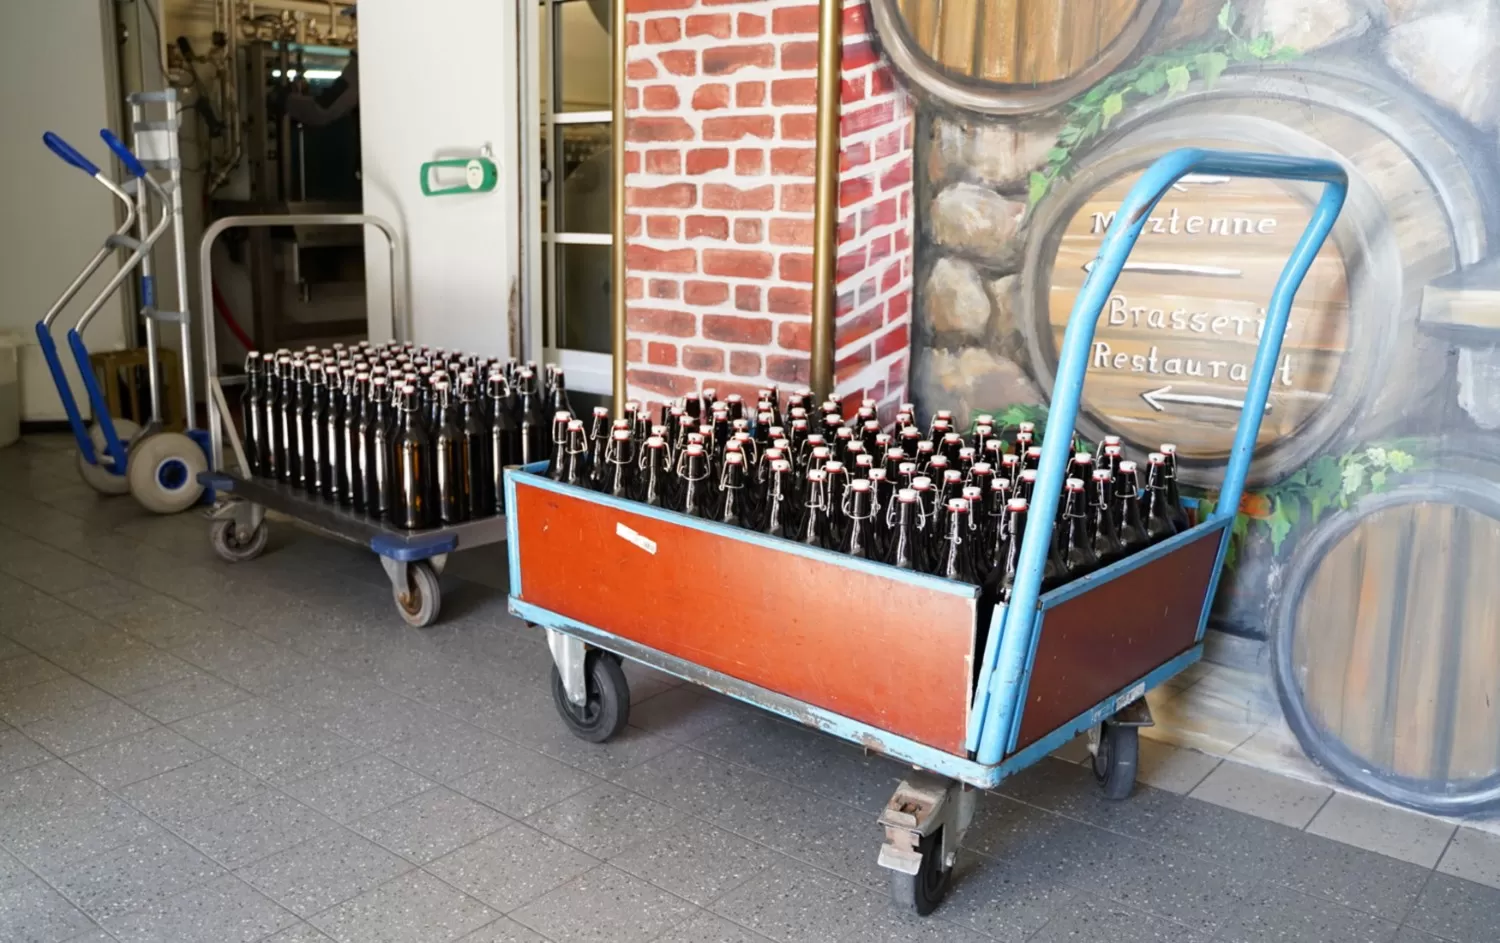 Una empresa alemana regaló 2.600 litros de cerveza en un día